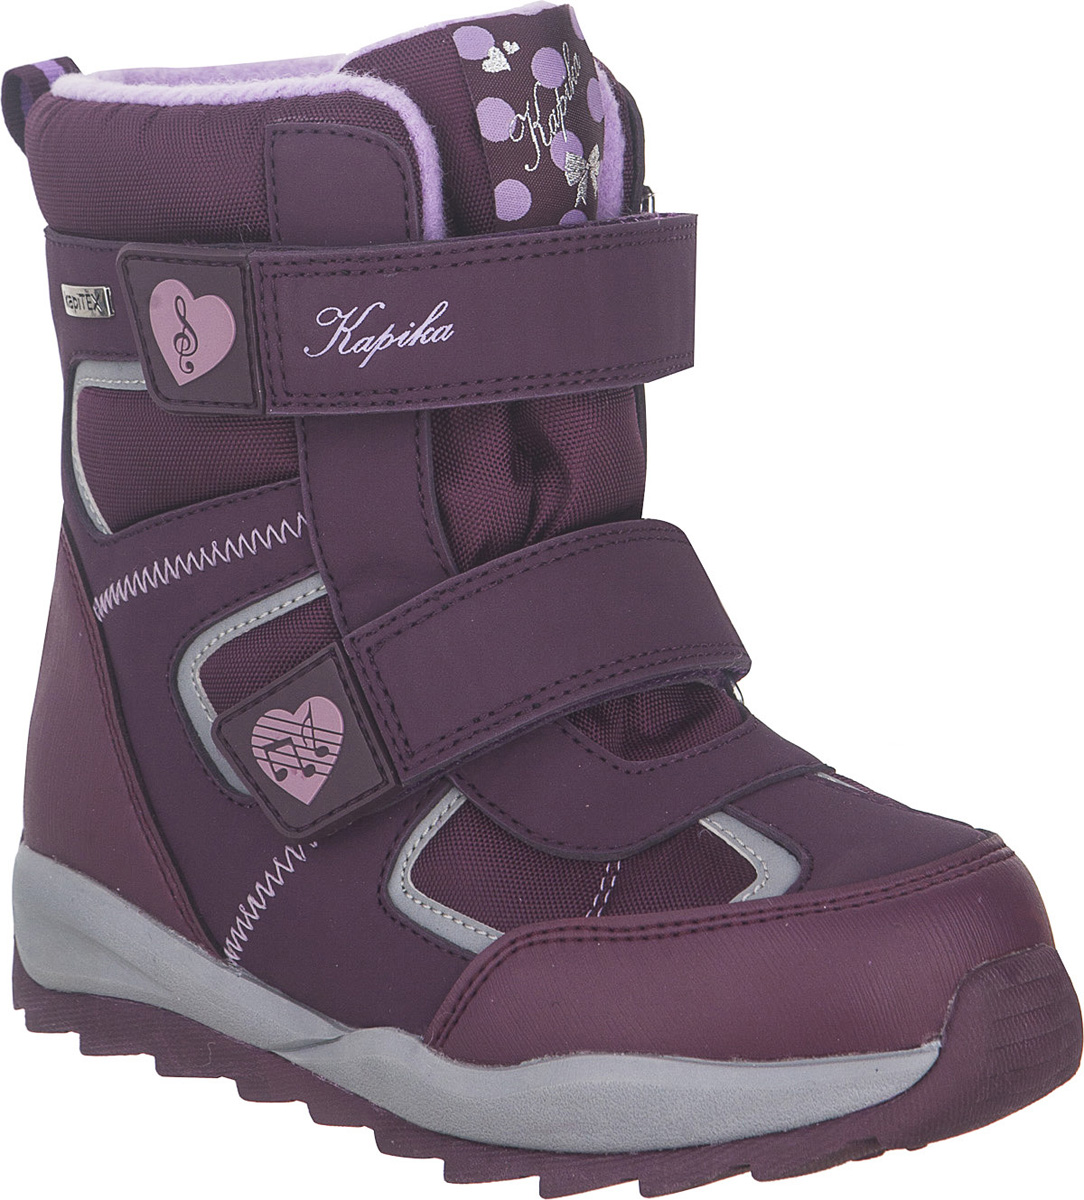 Ботинки для девочки Kapika KapiTEX, цвет: фиолетовый. 43214-1. Размер 31